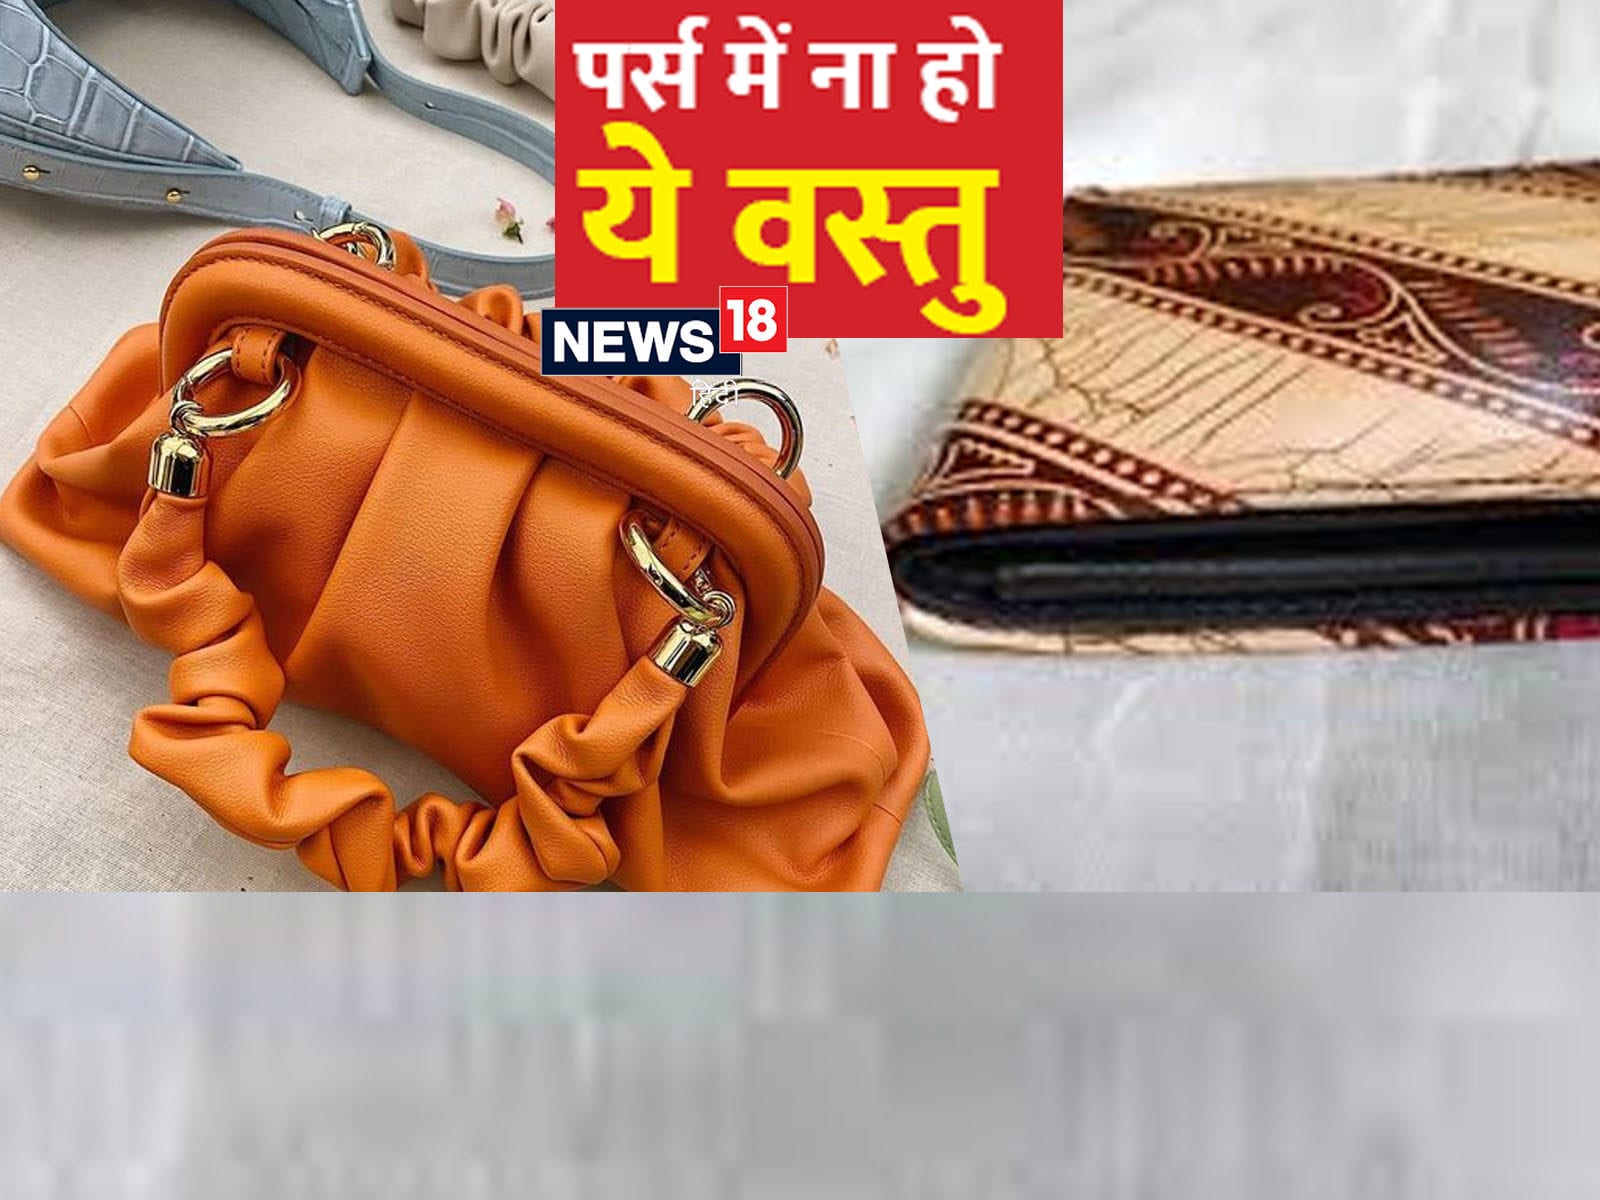 Various Purses & Bag in Nabi Karim,Delhi - Best Bag Manufacturers in Delhi  - Justdial